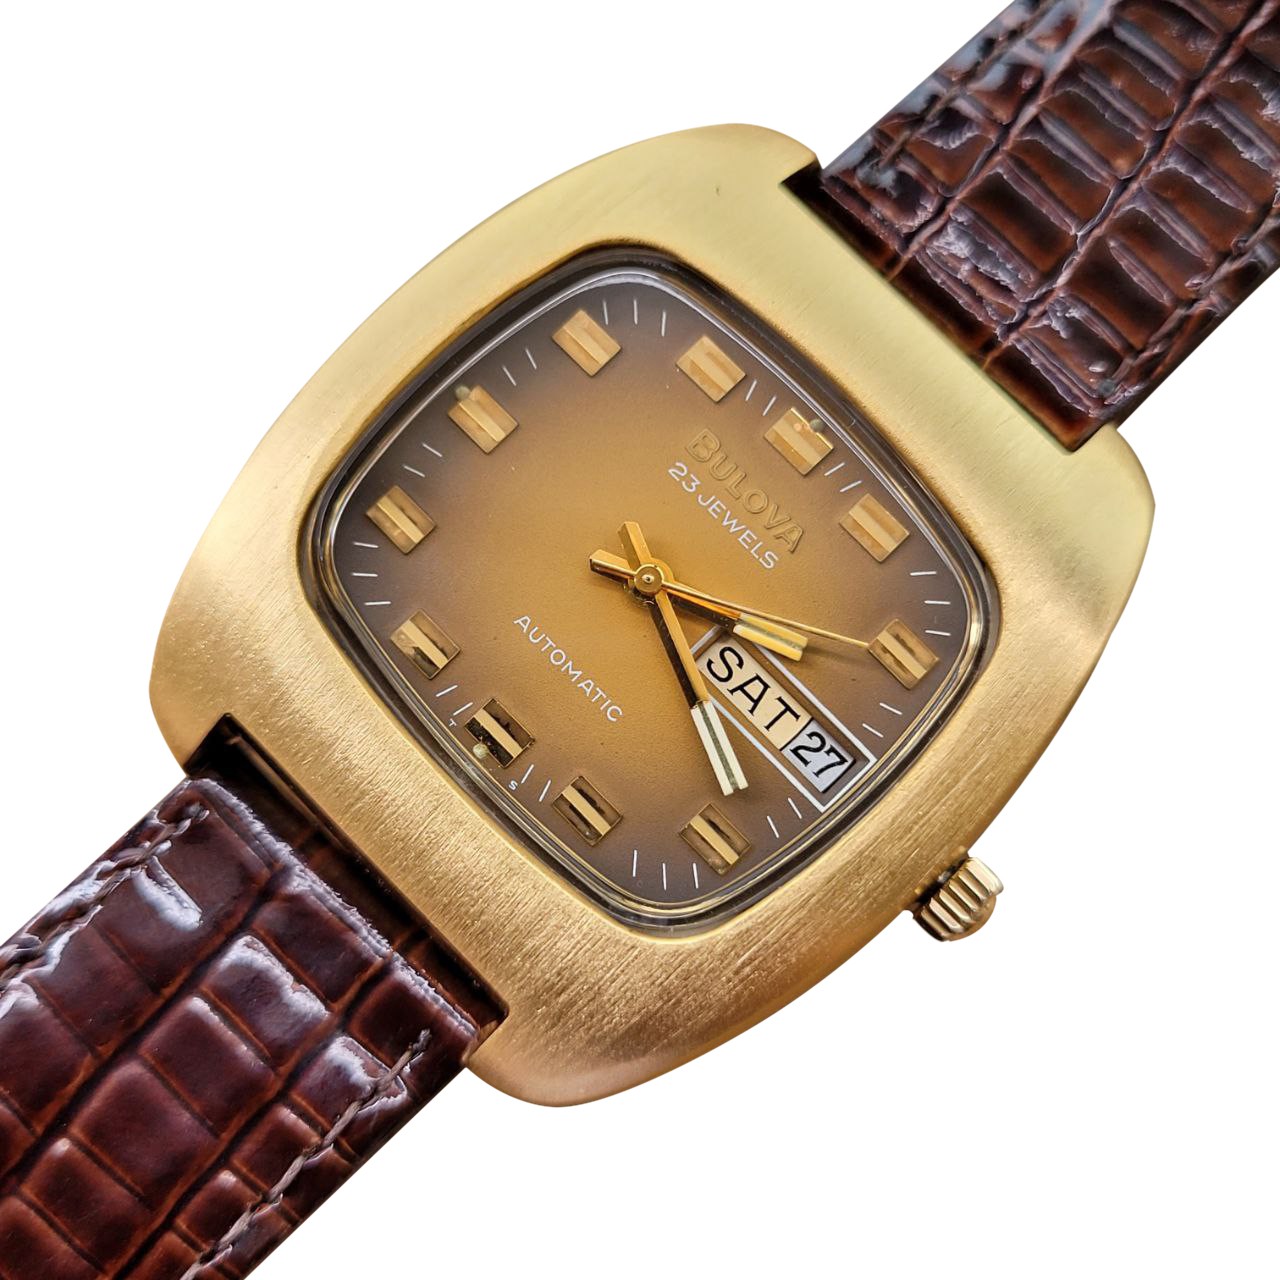 Relógio Masculino Bulova N4 Anos 70 Automático Banhado Ouro - Altarelojoria  relógios originais invicta orient casio e muito mais.